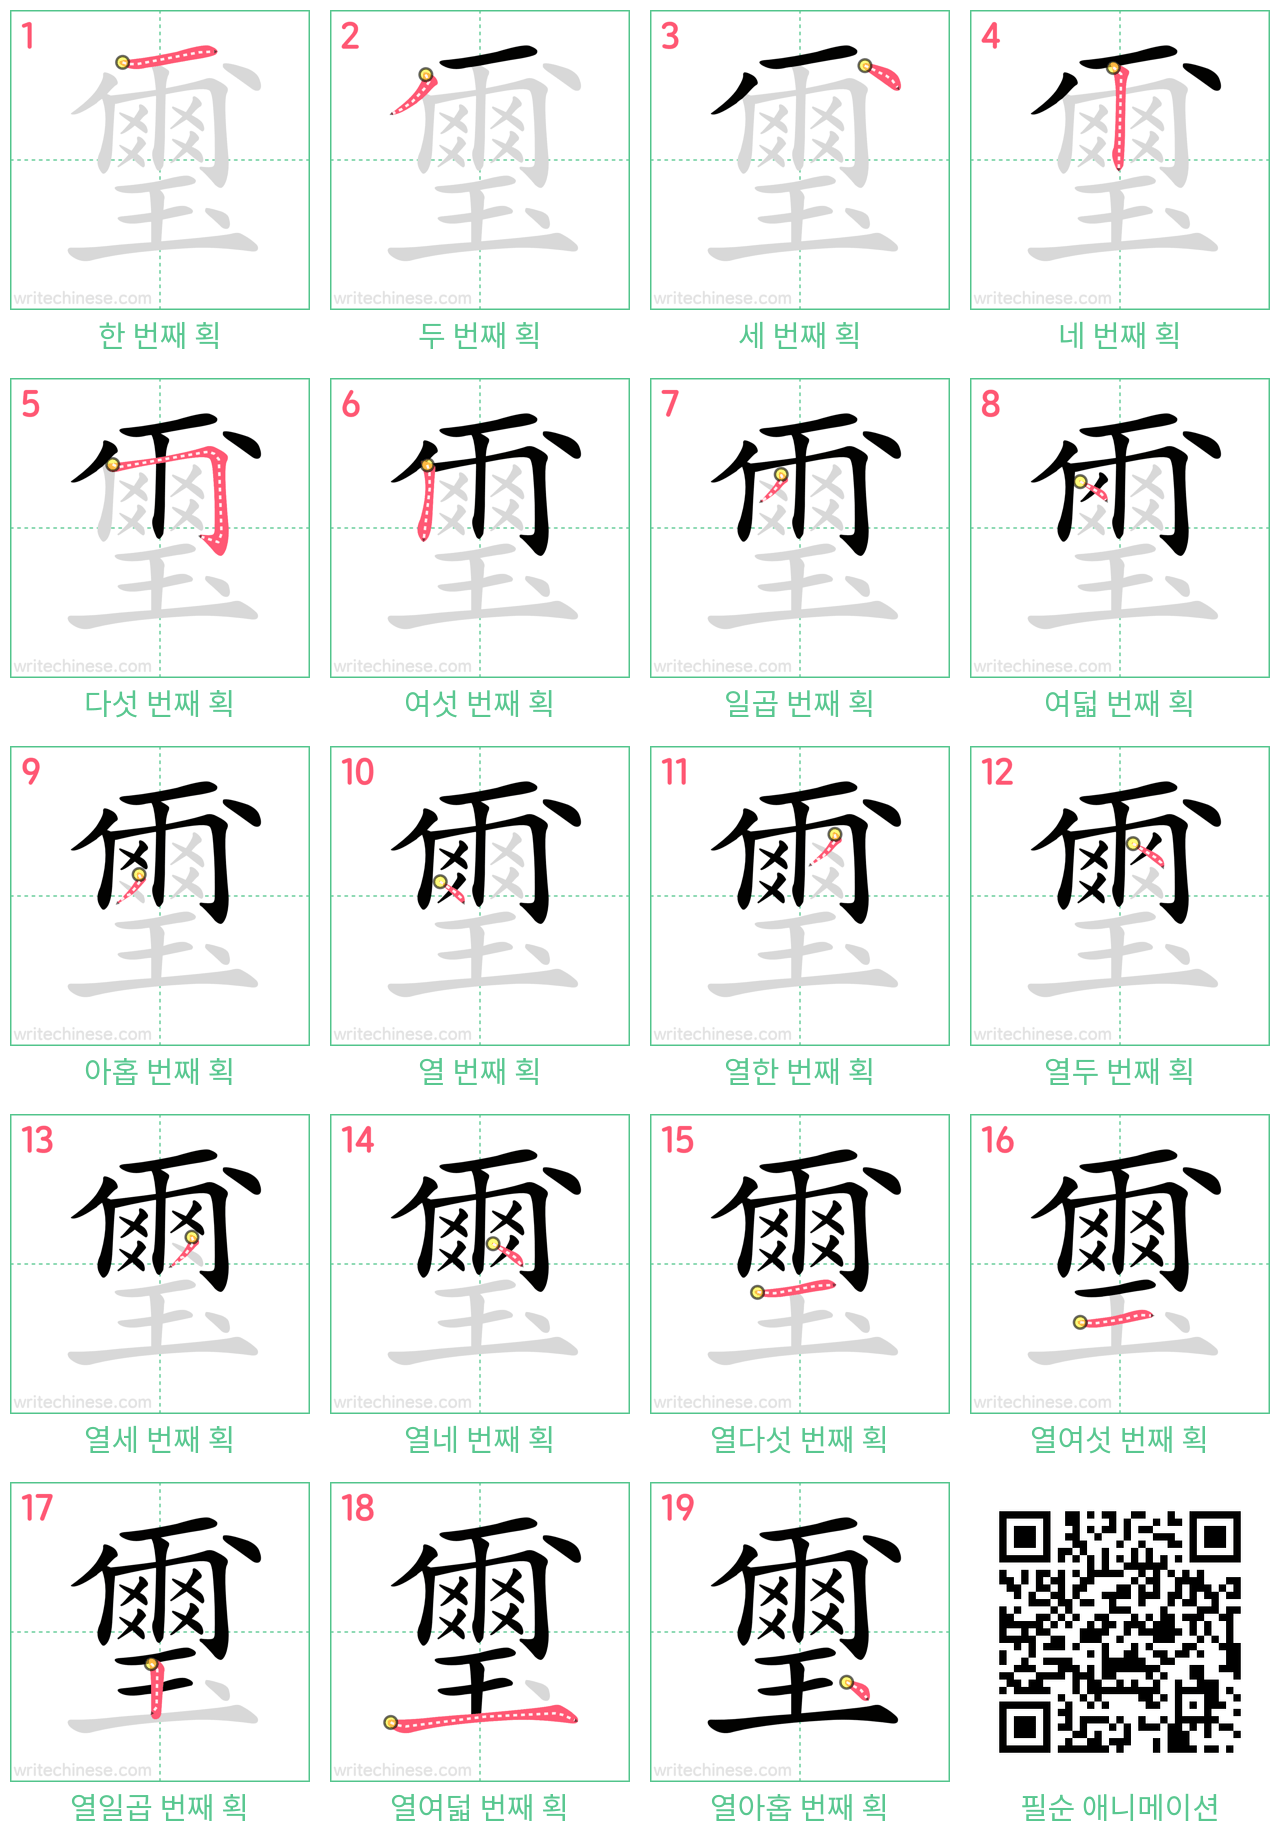 璽 step-by-step stroke order diagrams